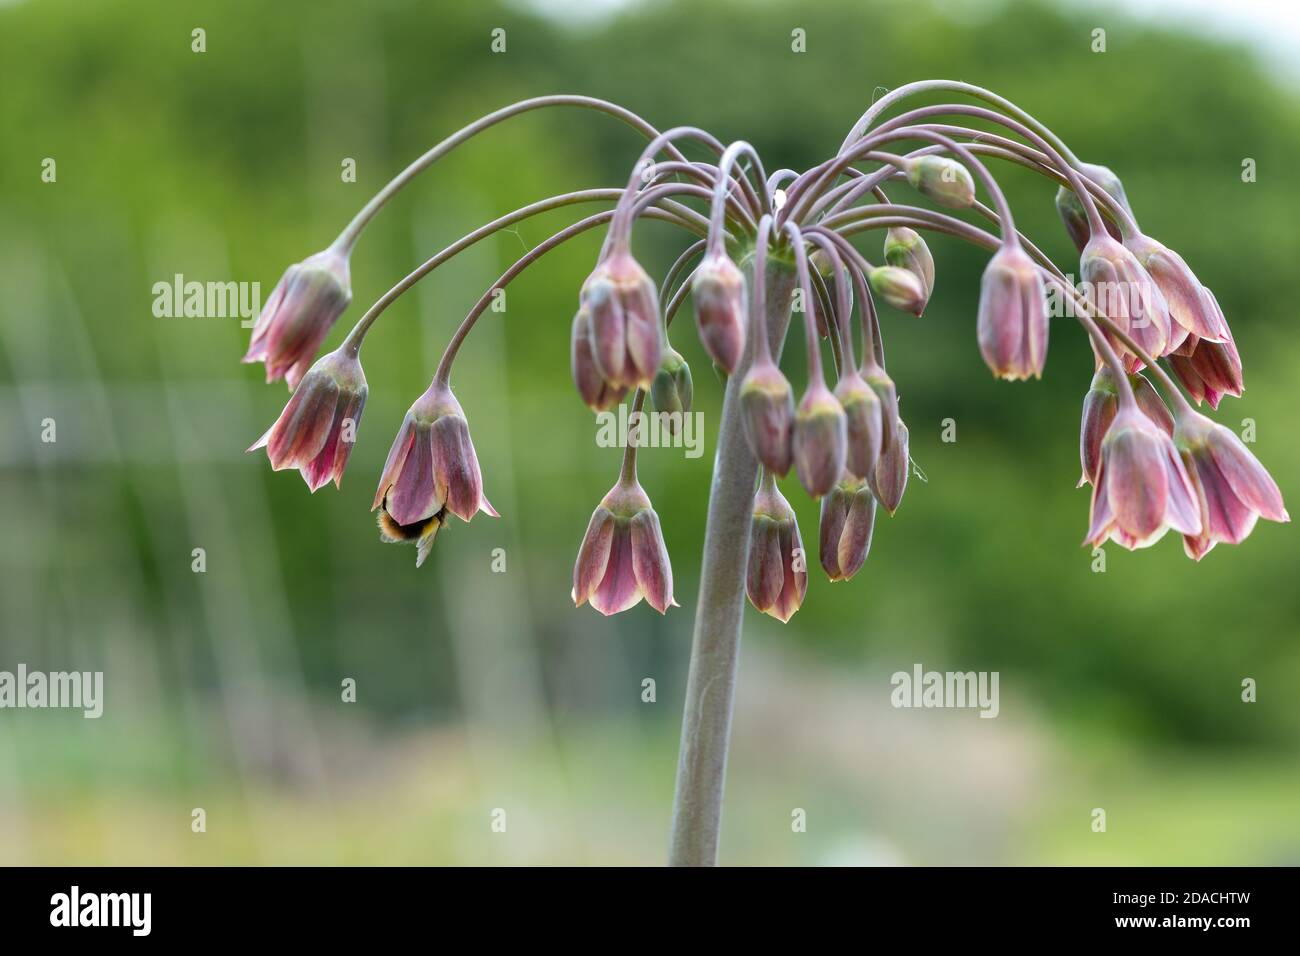 Nahaufnahme einer Honiglilie (allium siculum) Pflanze in Blüte Stockfoto